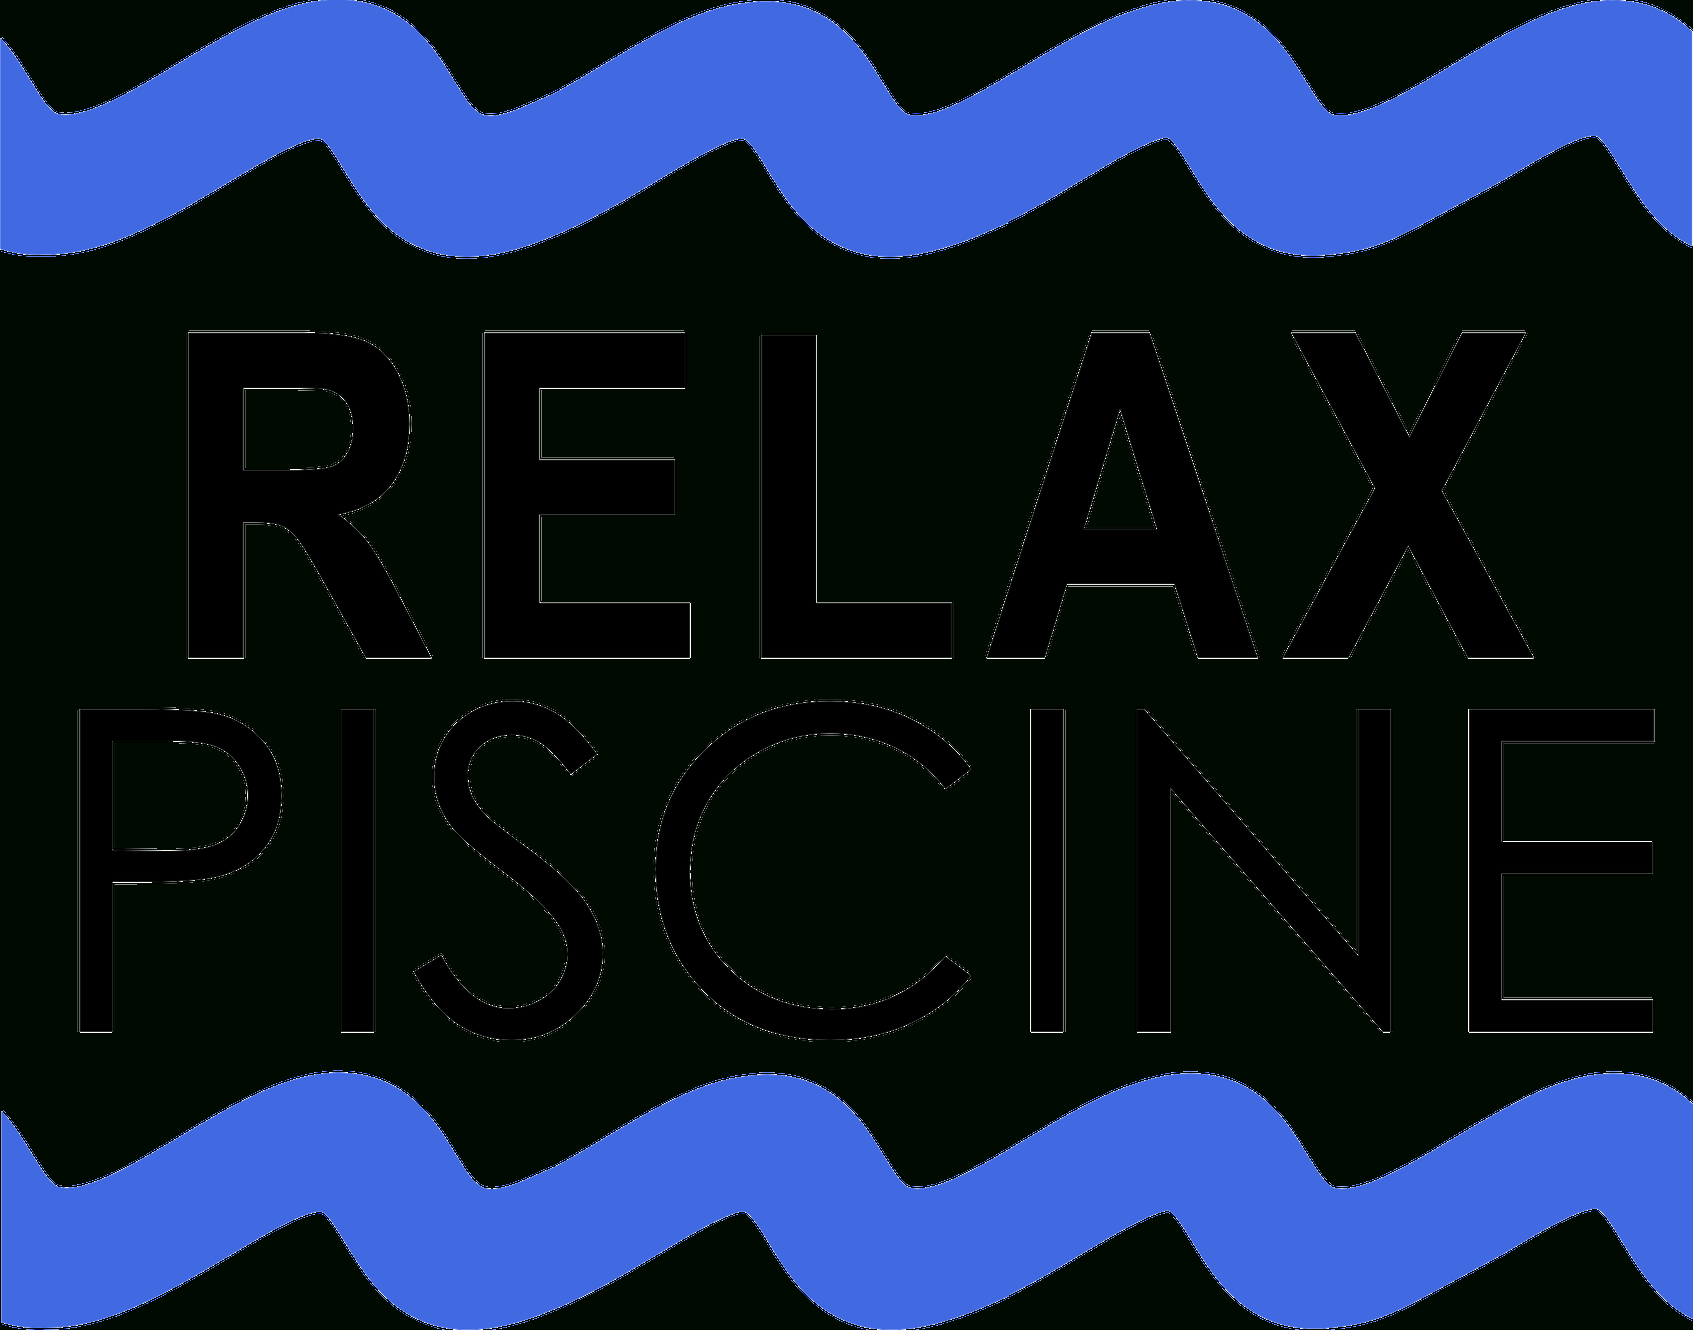 Création De Piscine Enterrée | Relax Piscine | France intérieur Musique Piscine